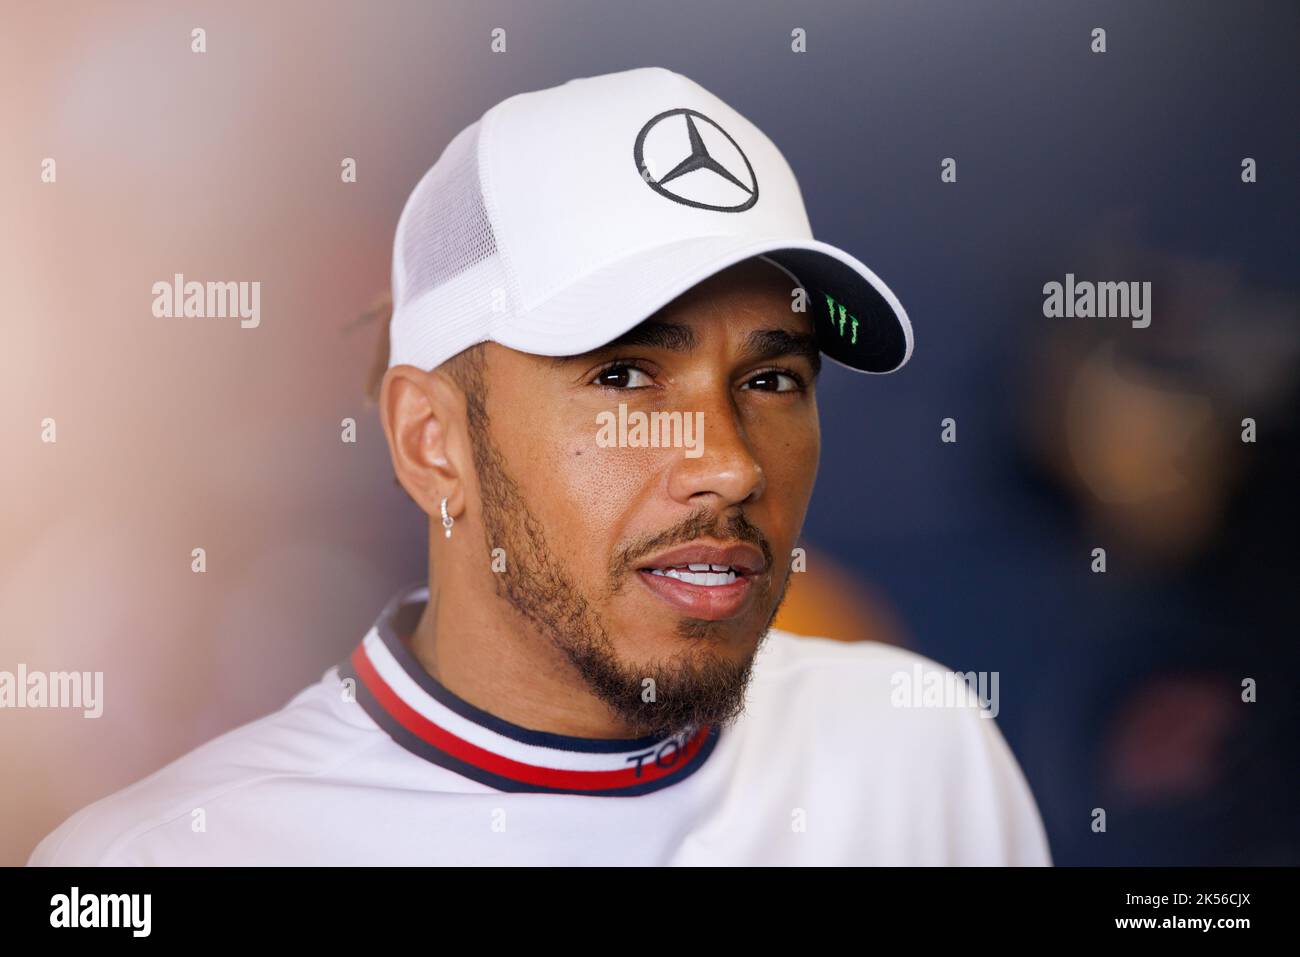 Circuit de course international de Suzuka 6/10/2022. Lewis Hamilton (GBR) de l'équipe Mercedes pendant une entrevue. Credit corleve/Alay Live News. Banque D'Images